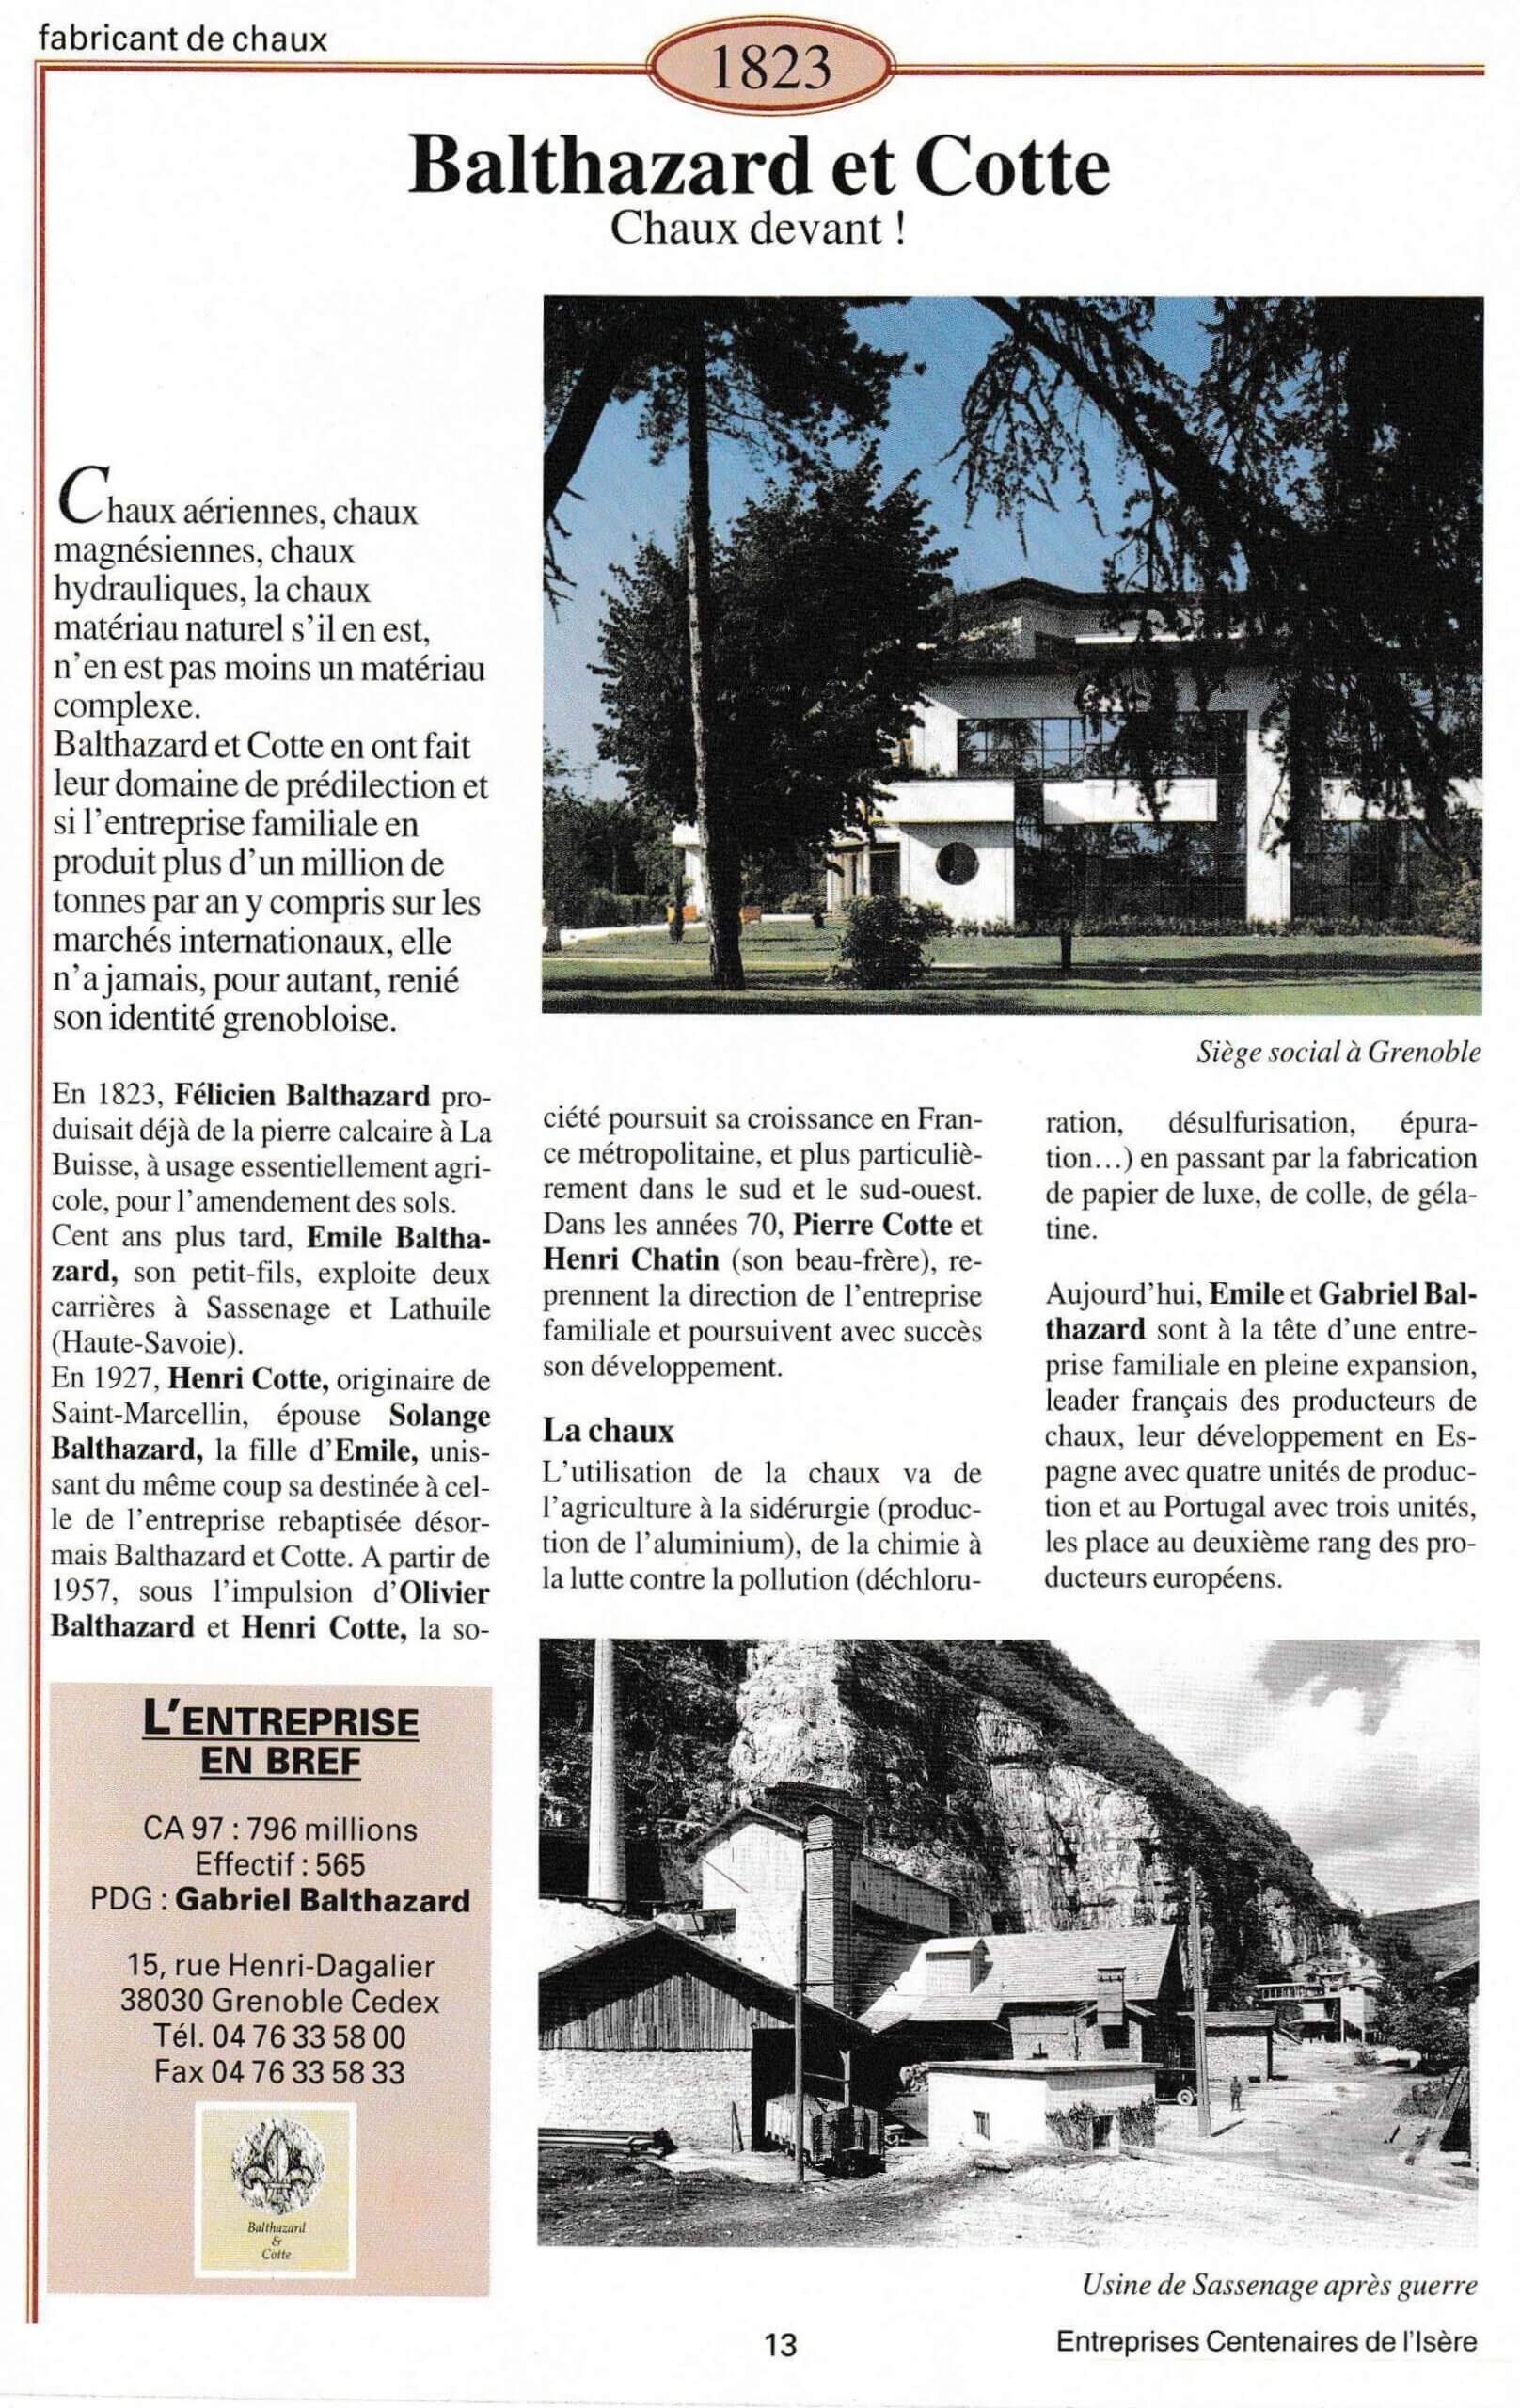 Balthazard et Cotte - fiche du supplément "Entreprises centenaires en Isère", publié par Les affiches de Grenoble et du Dauphiné, juin 1998.